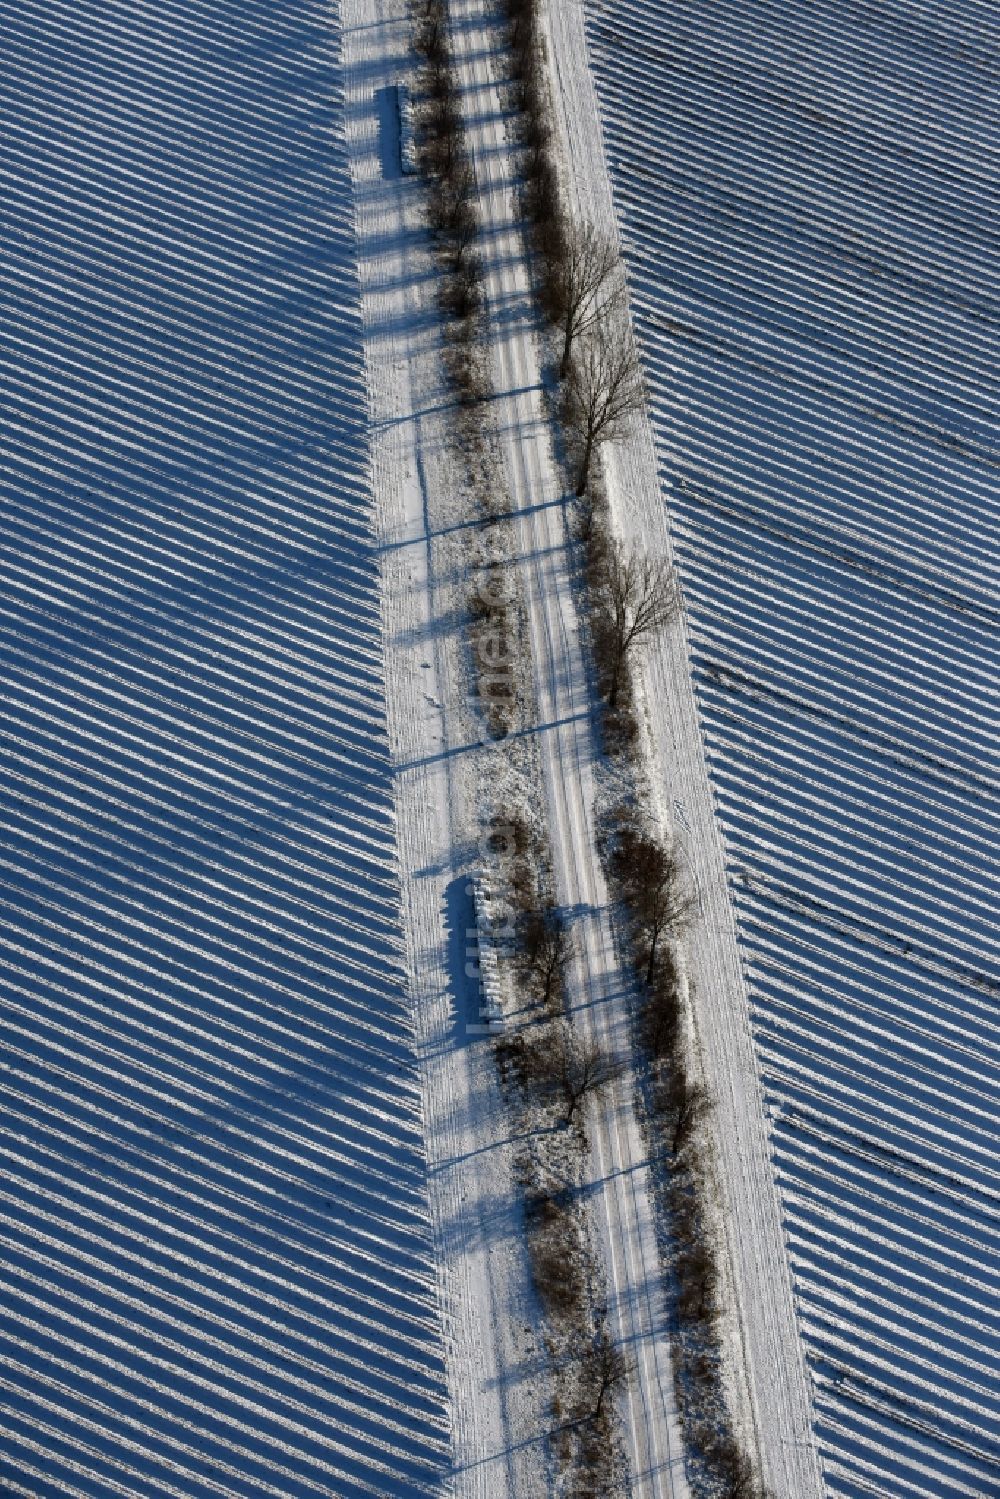 Roskow von oben - Winterlich schneebedeckte Reihen mit Spargel- Anbau auf Feld- Flächen mit einer von Baumreihen gesäumten Allee, deren Bäume lange Schatten werfen in Lünow im Bundesland Brandenburg